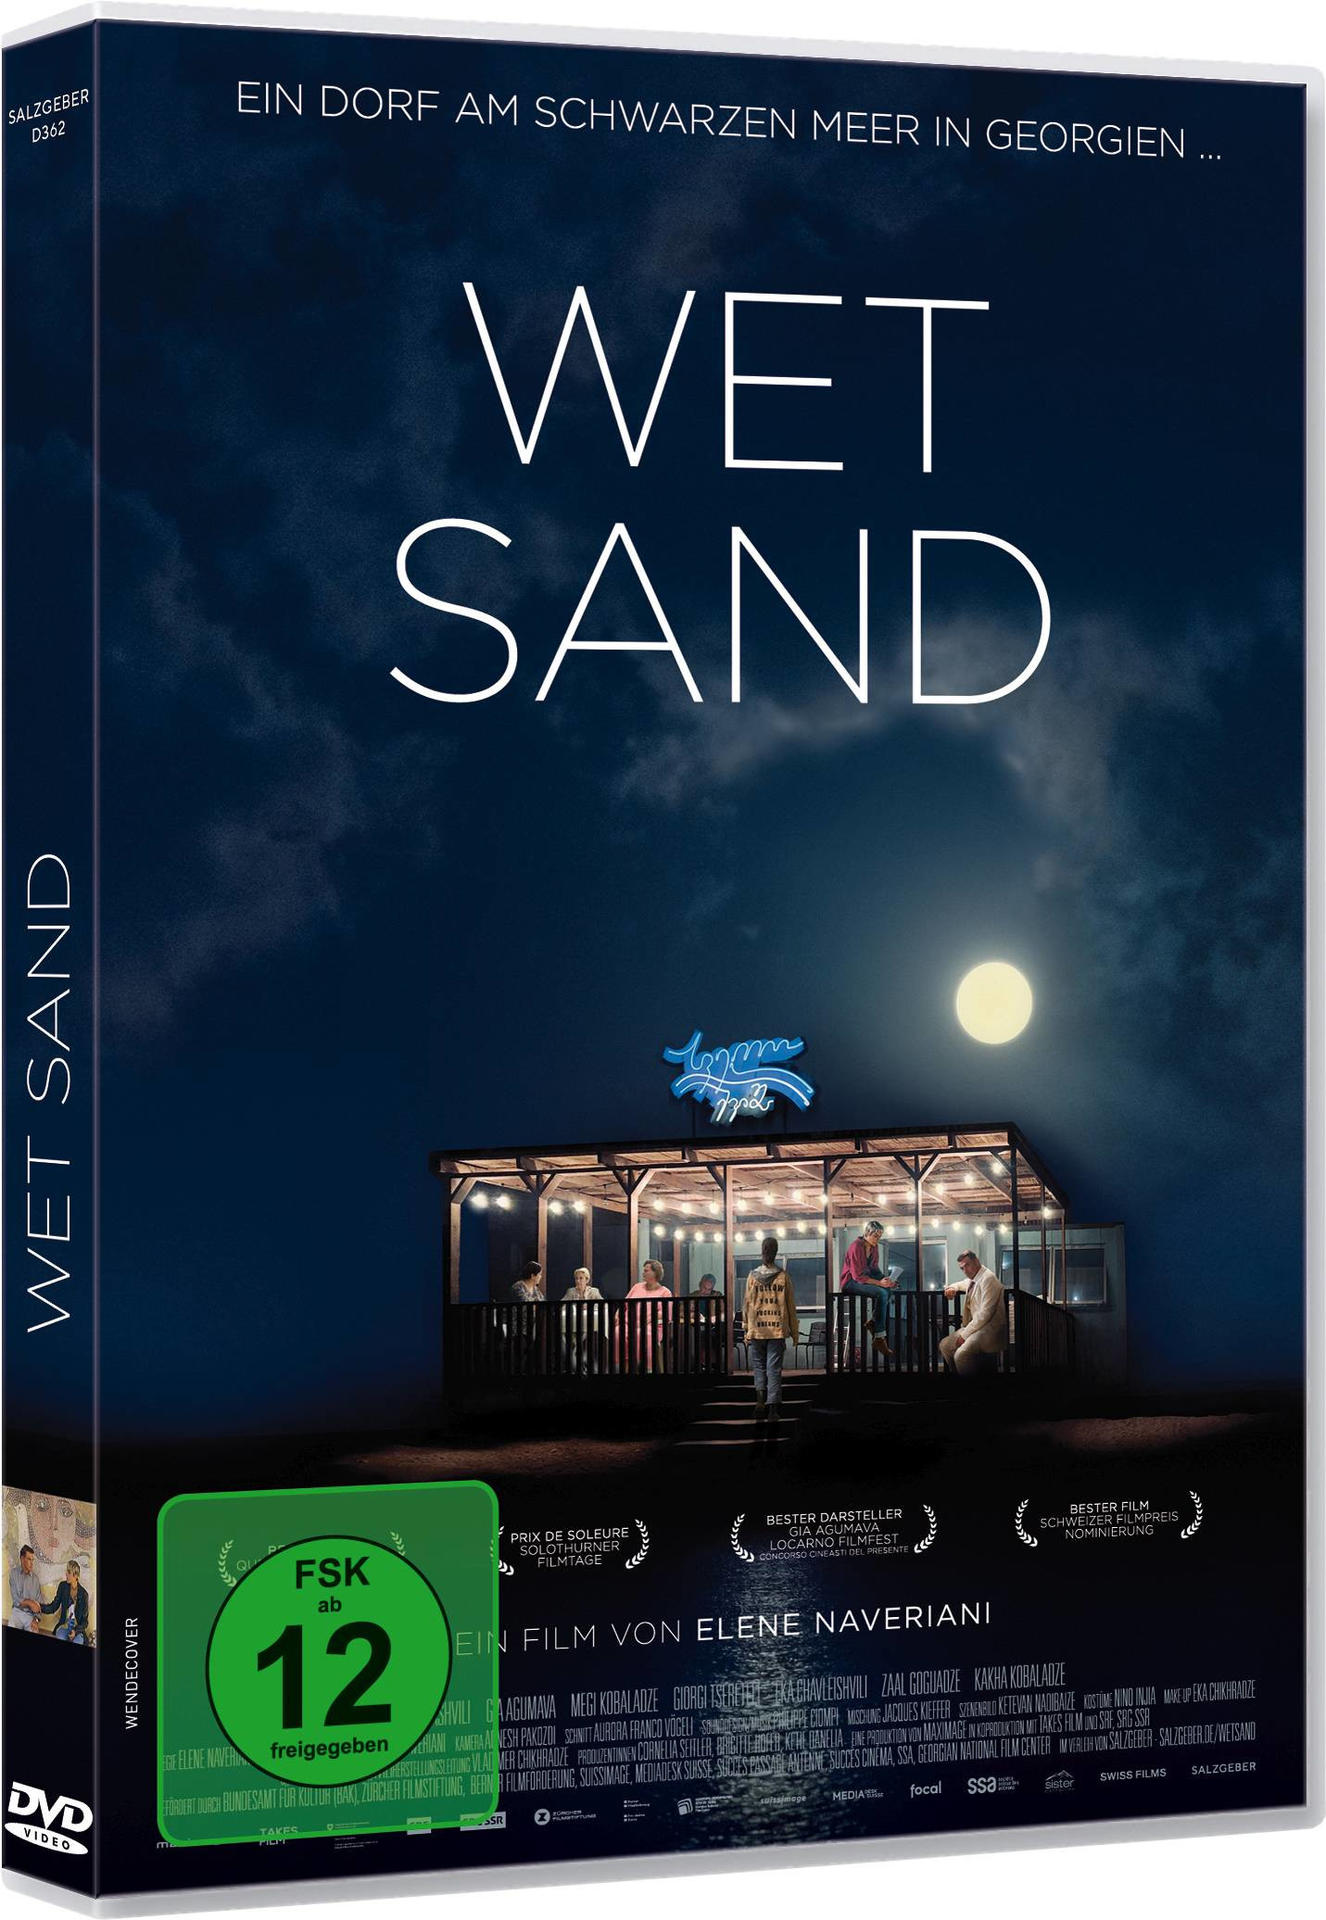 Wet DVD Sand